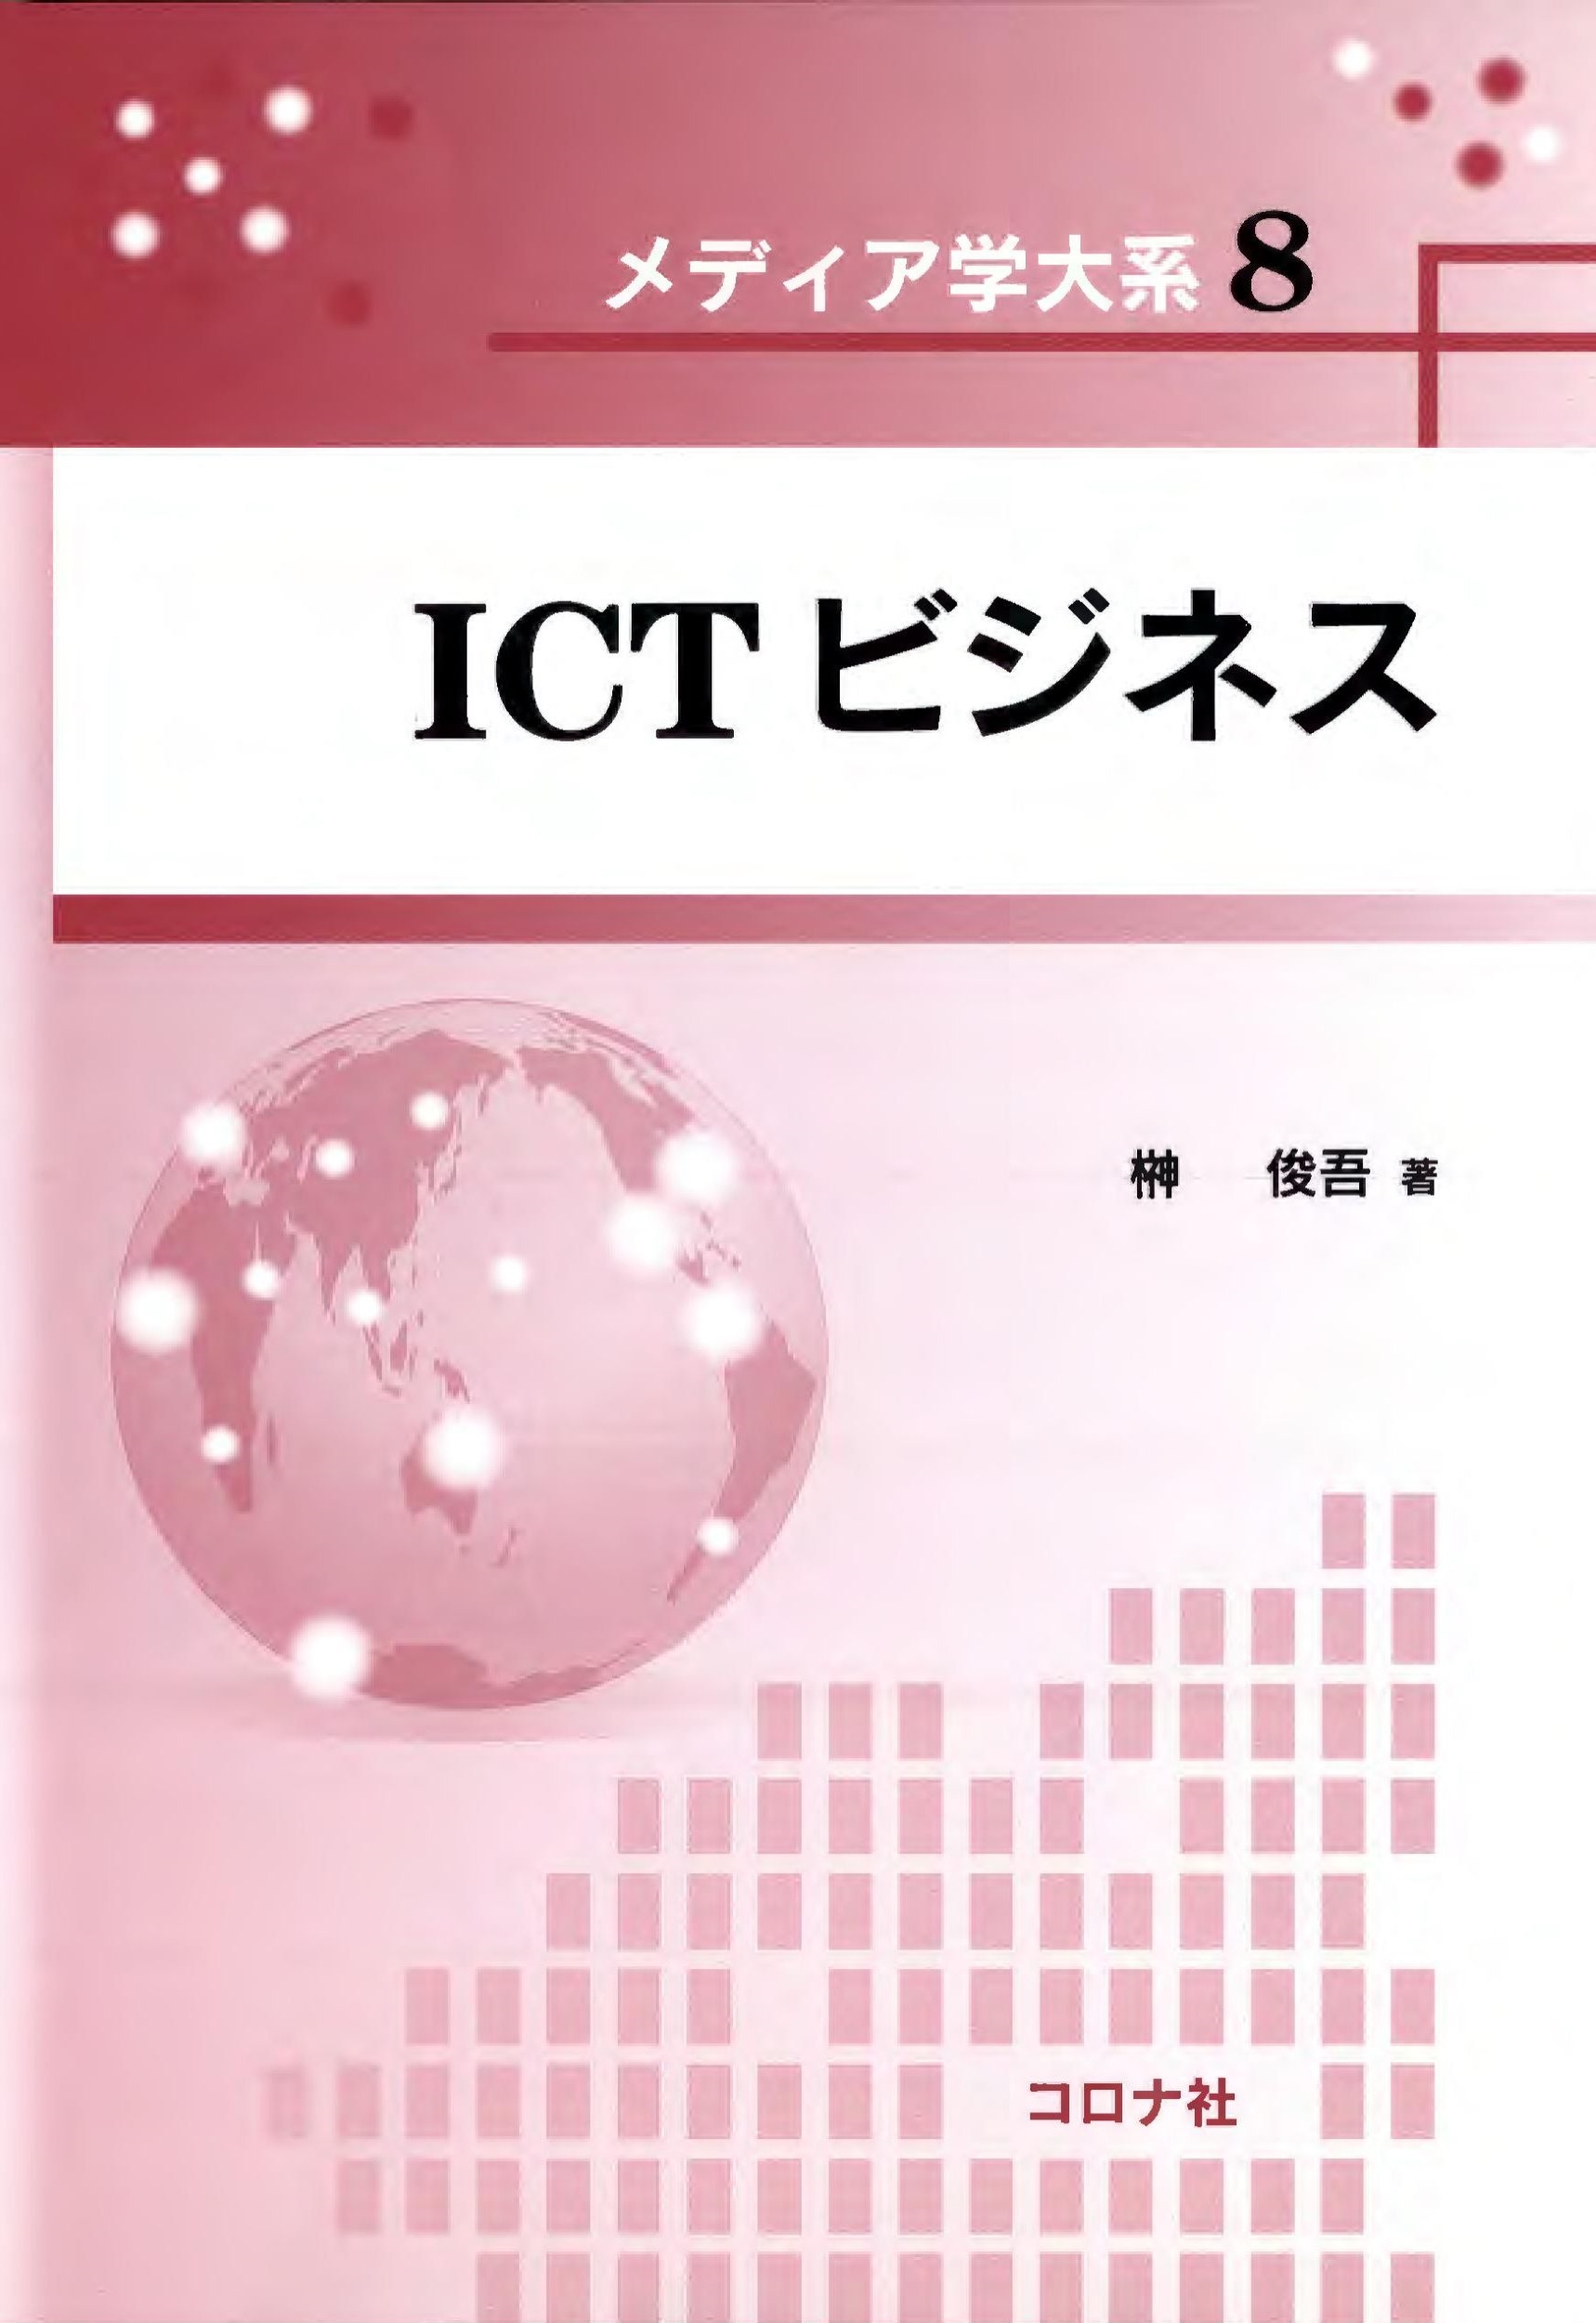 ICTビジネスの商品画像